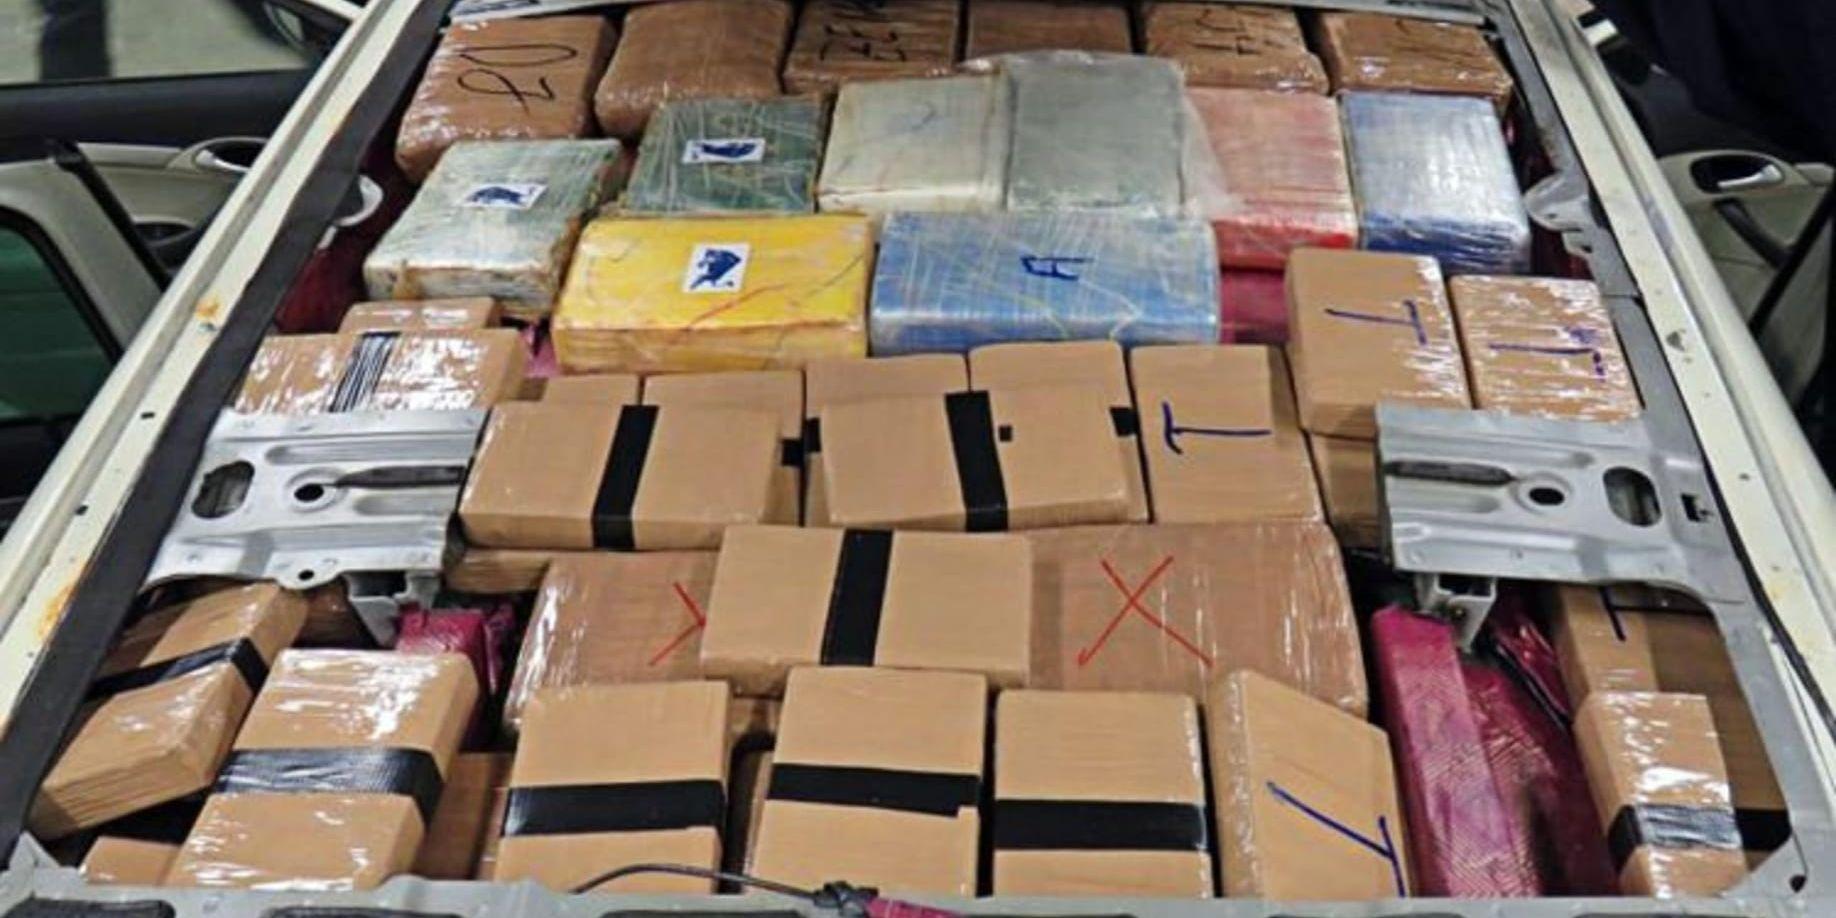 I en konstruerad låda mellan inner- och yttertaket på en personbil låg nästan 22 kilo kokain och tio kilo heroin. Nu åtalas en 26-årig man för synnerligen grov narkotikasmuggling.